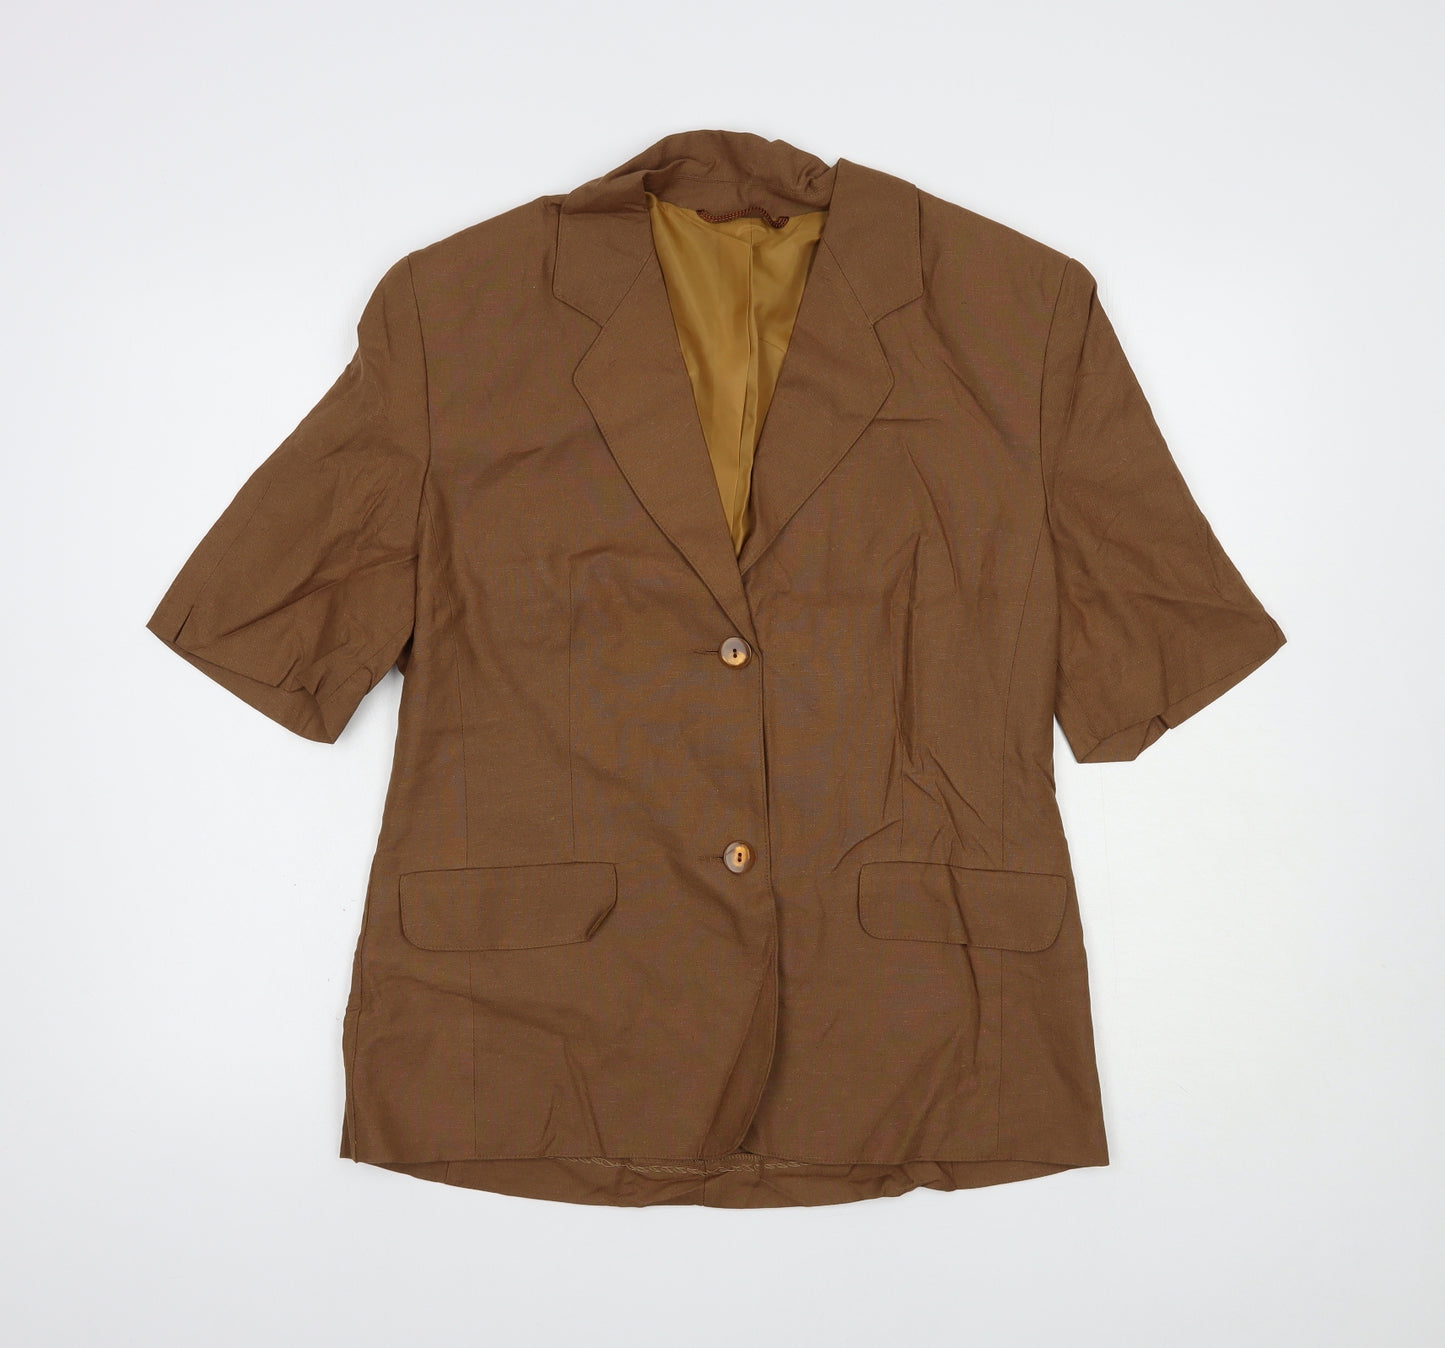 Steilmann Womens Brown   Jacket Blazer Size 14  Button